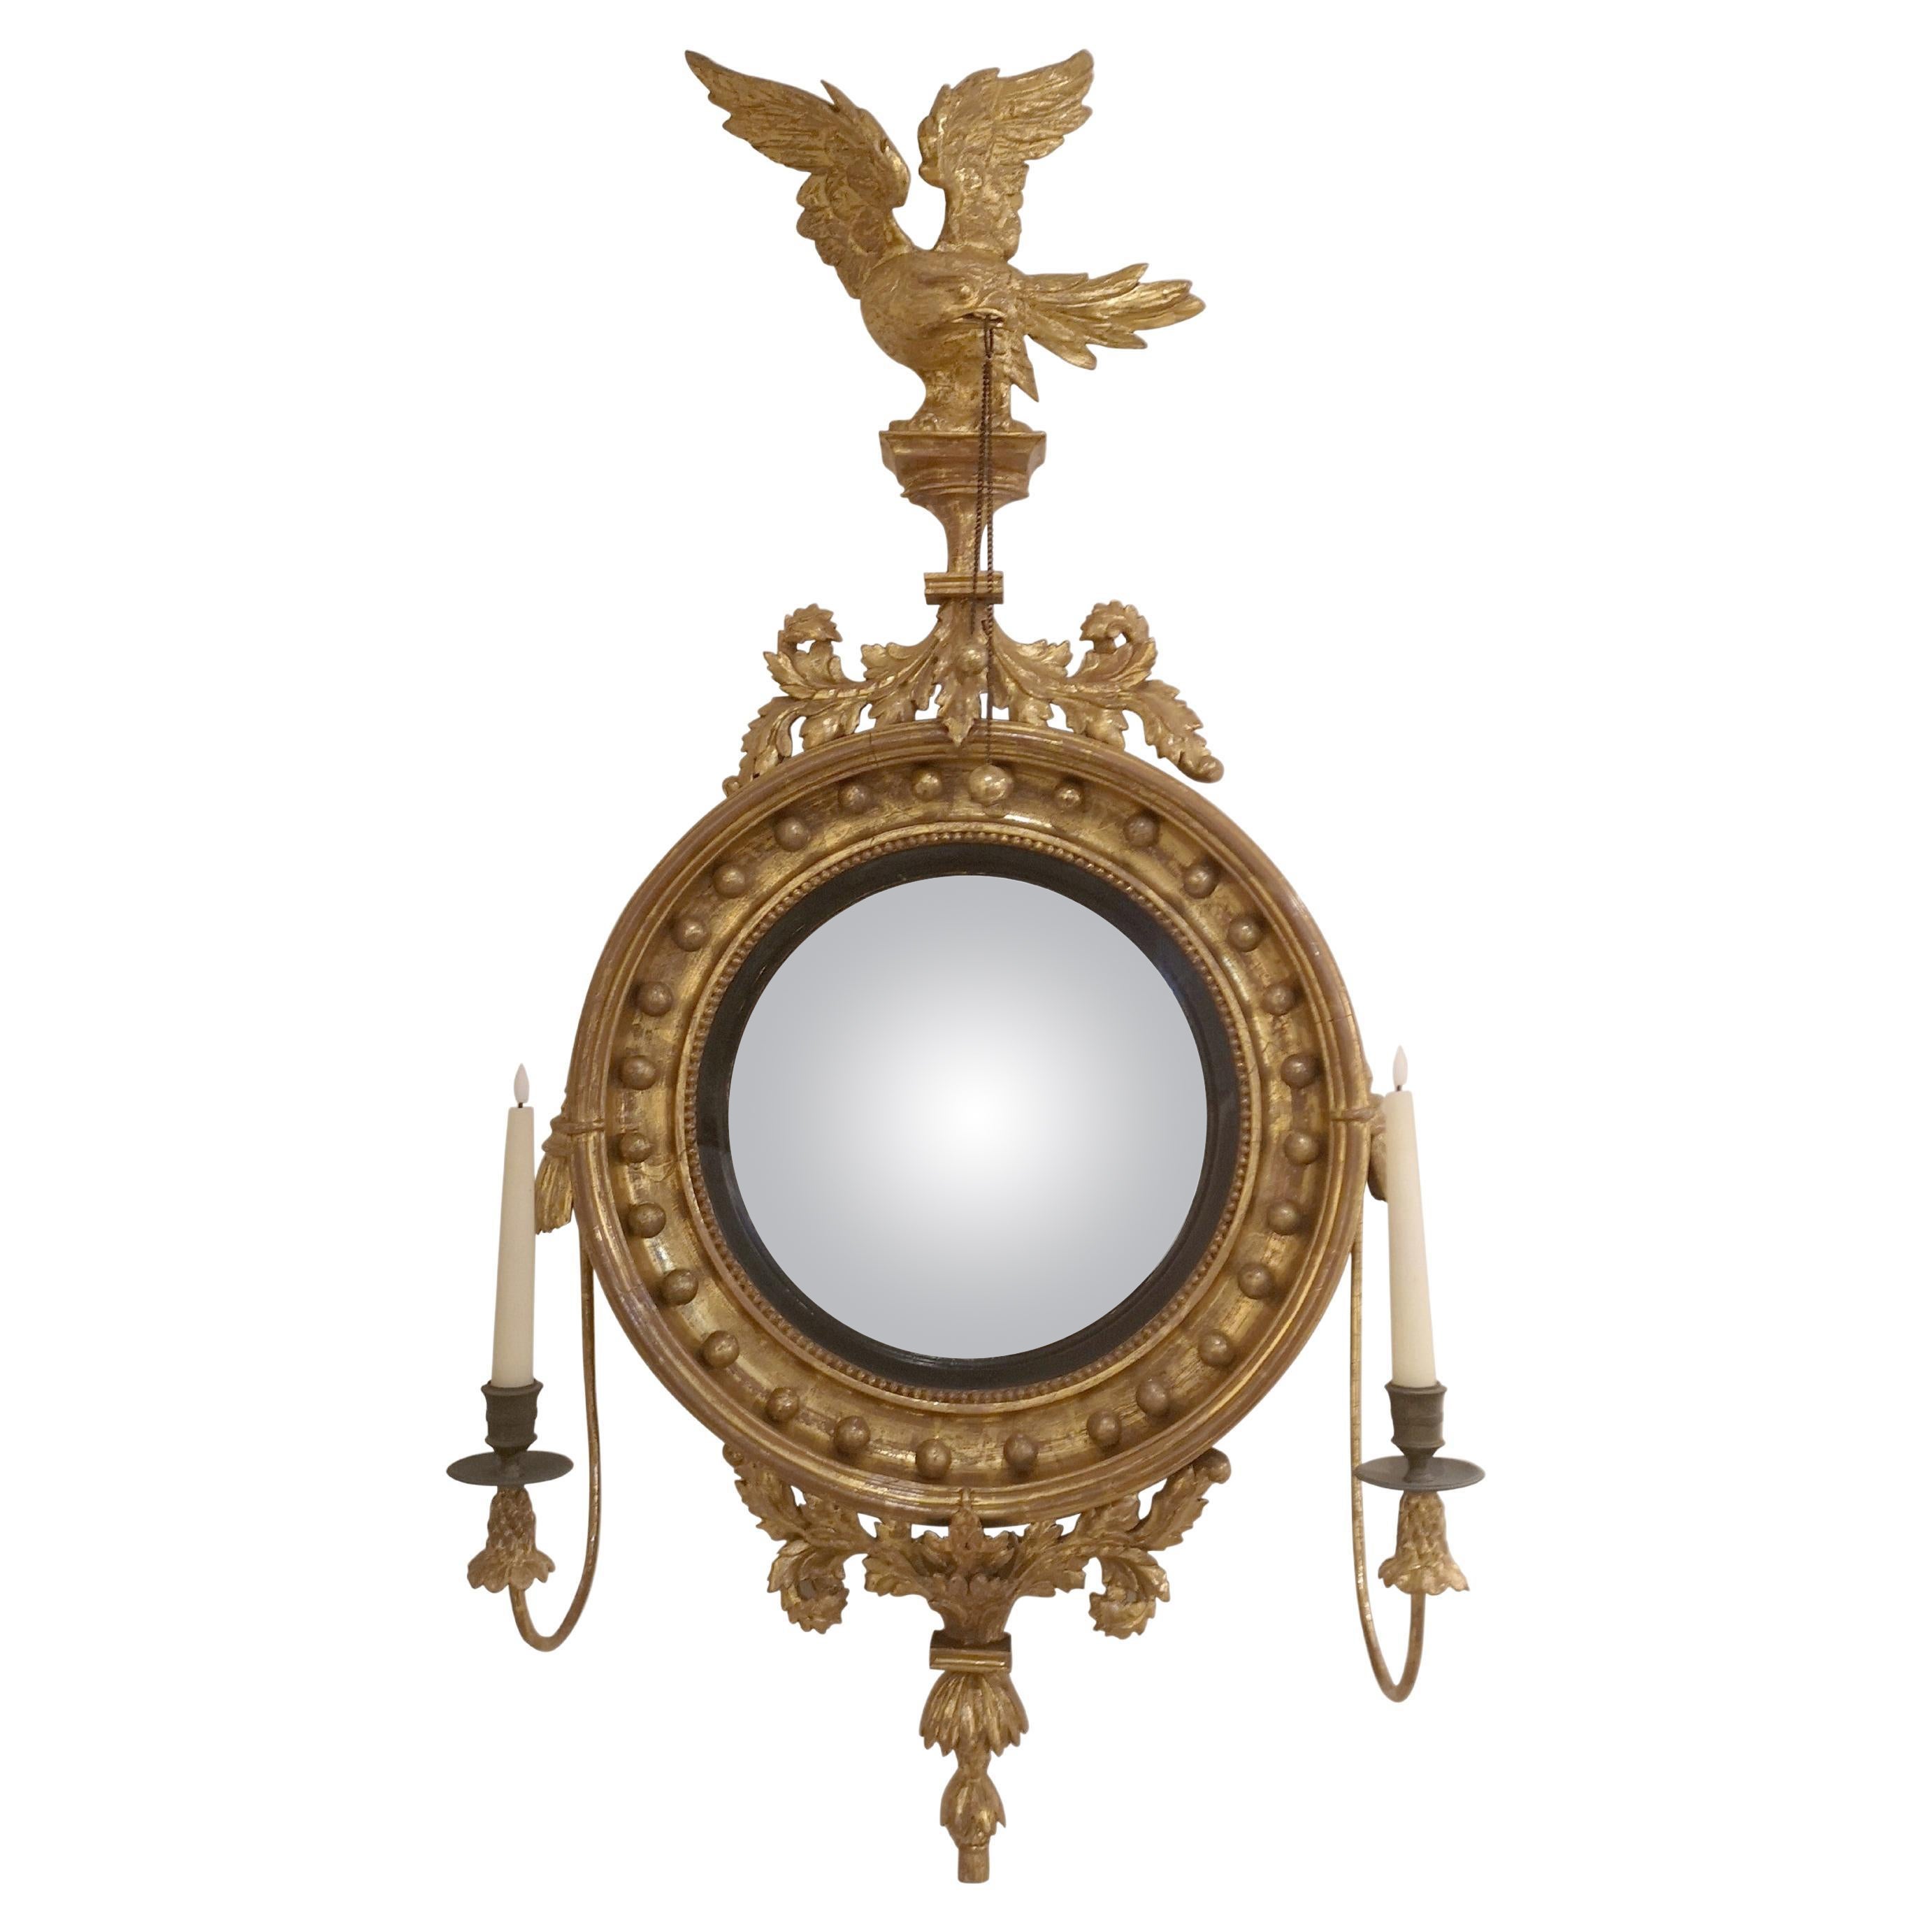 Vergoldeter und geschnitzter konvexer Spiegel aus der Regency-Periode